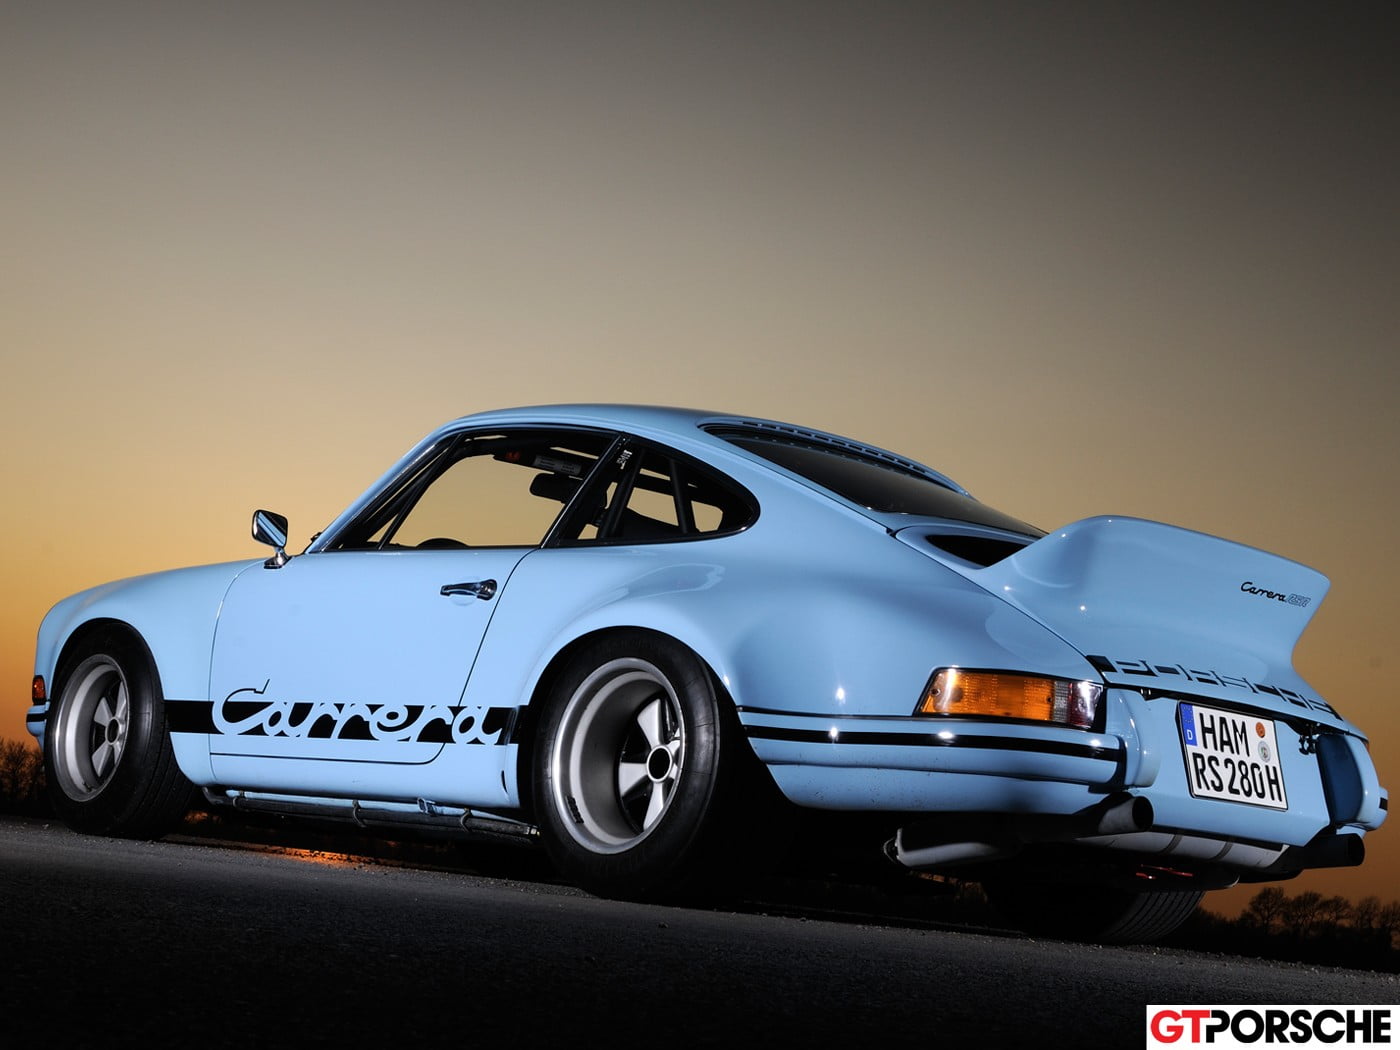 teal Porsche Carrera coupe, car, Porsche, blue cars